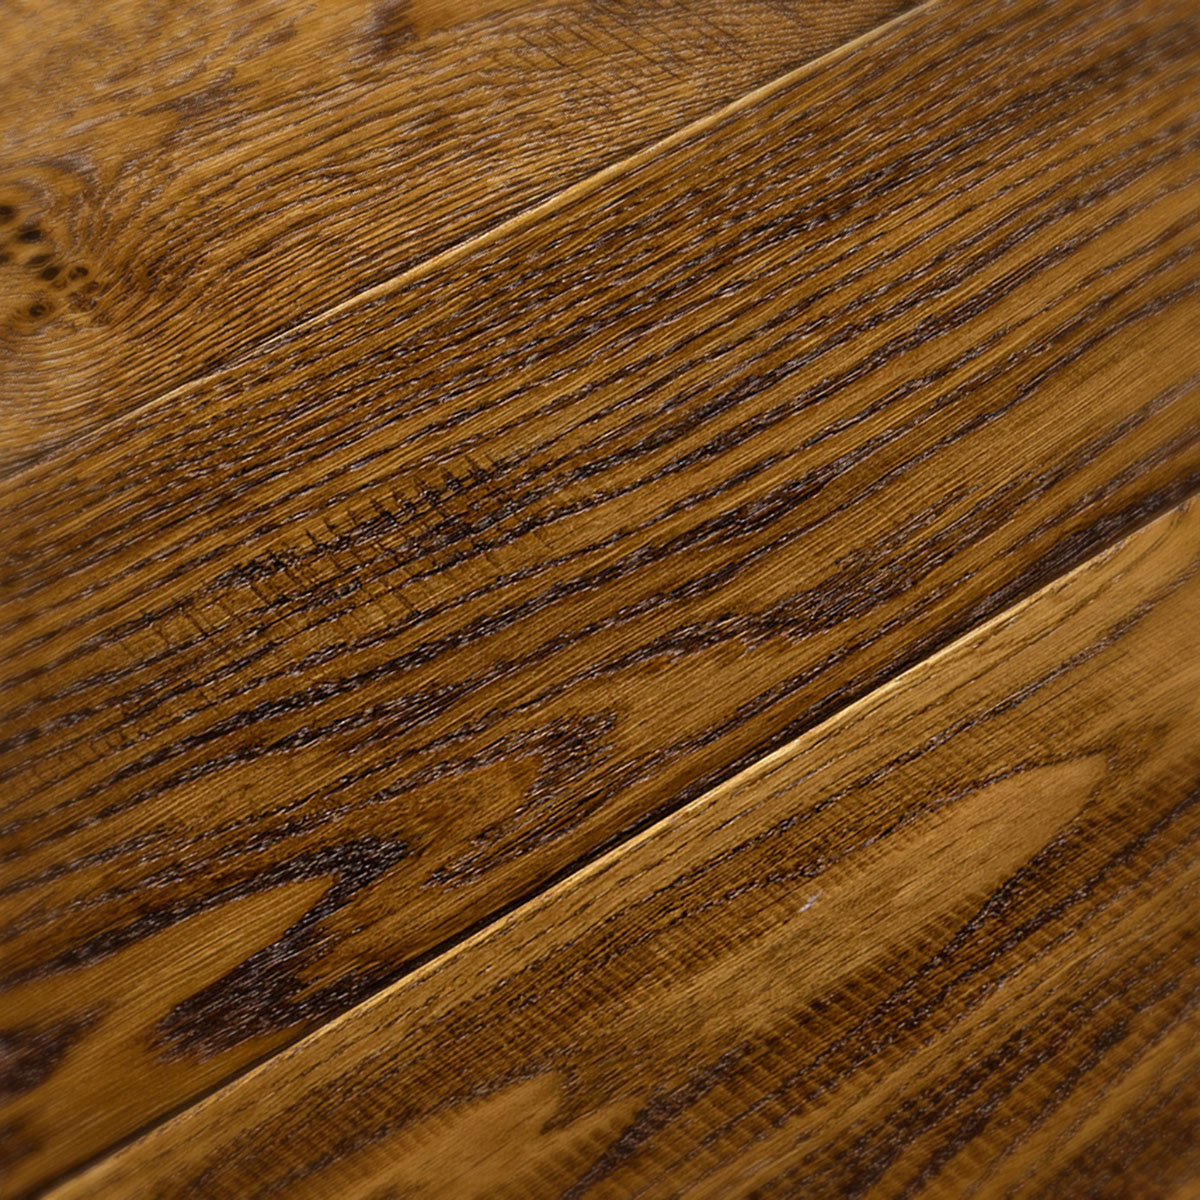 Crowden Herringbone - Hand-Worked, Brushed, Distressed Rustic Oak Floor